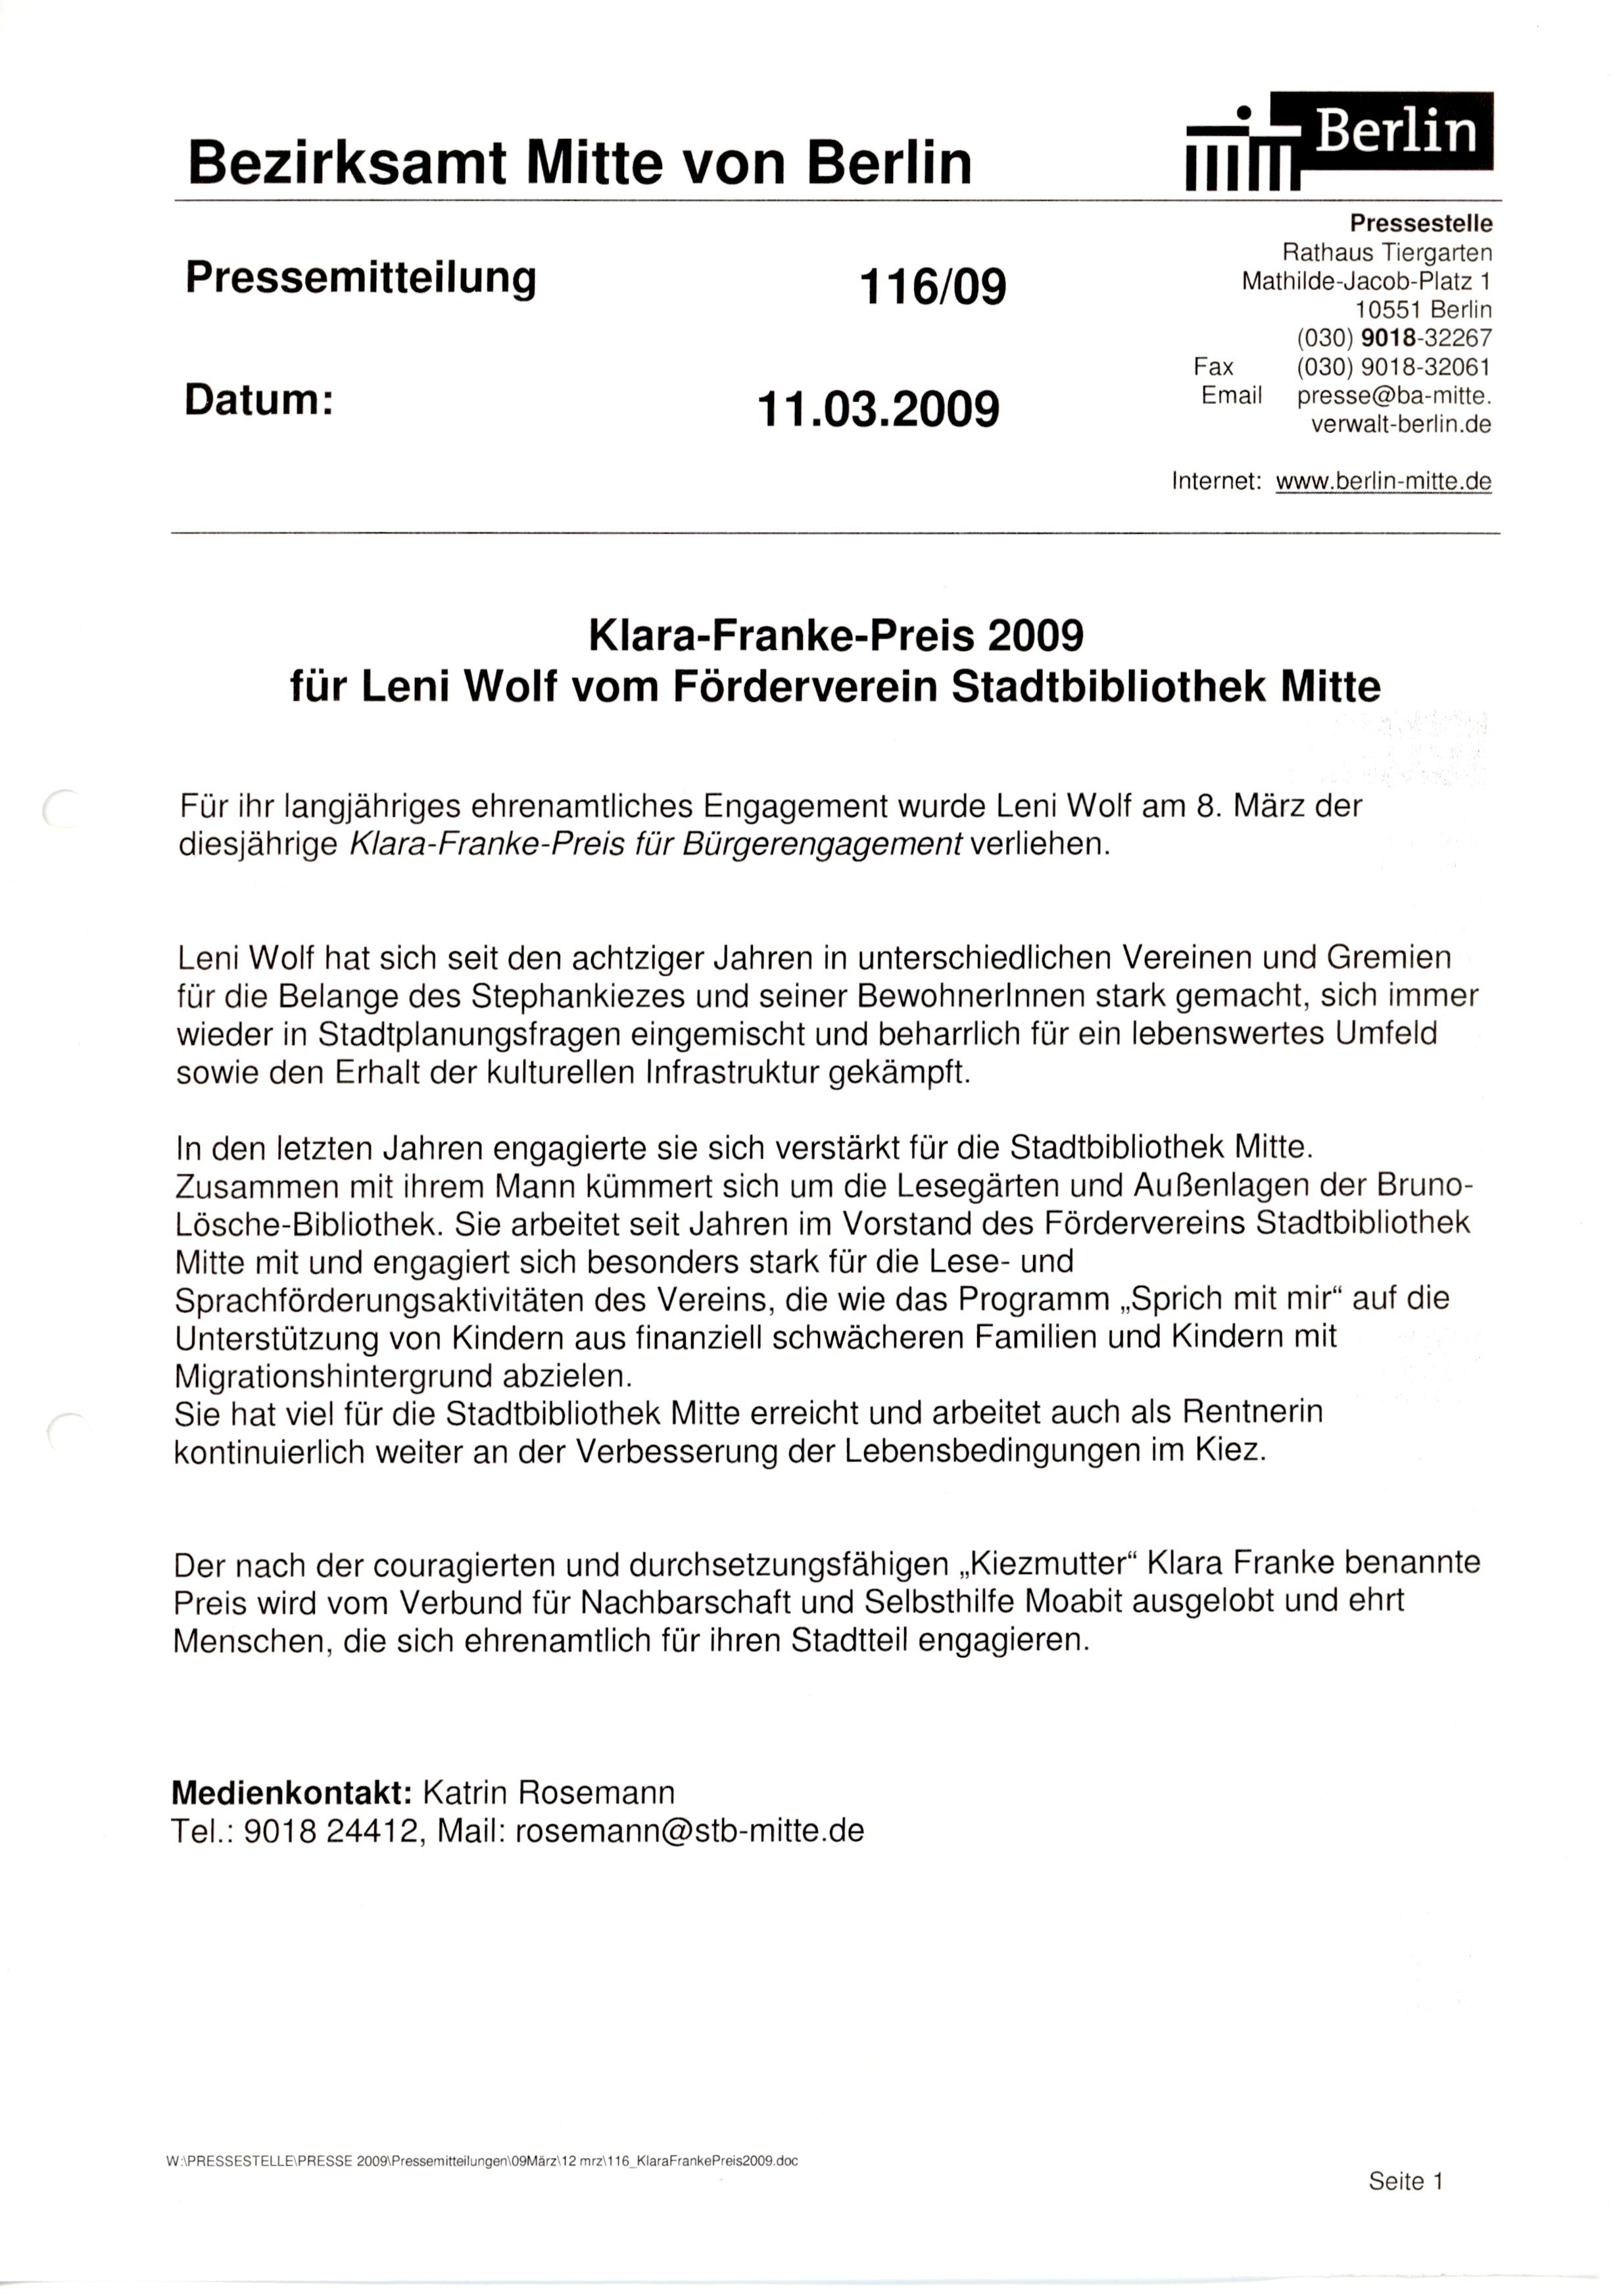 Pressemitteilung Klara-Franke-Preis 2009, Bezirksamt Mitte von Berlin (B-Laden CC BY-NC-SA)